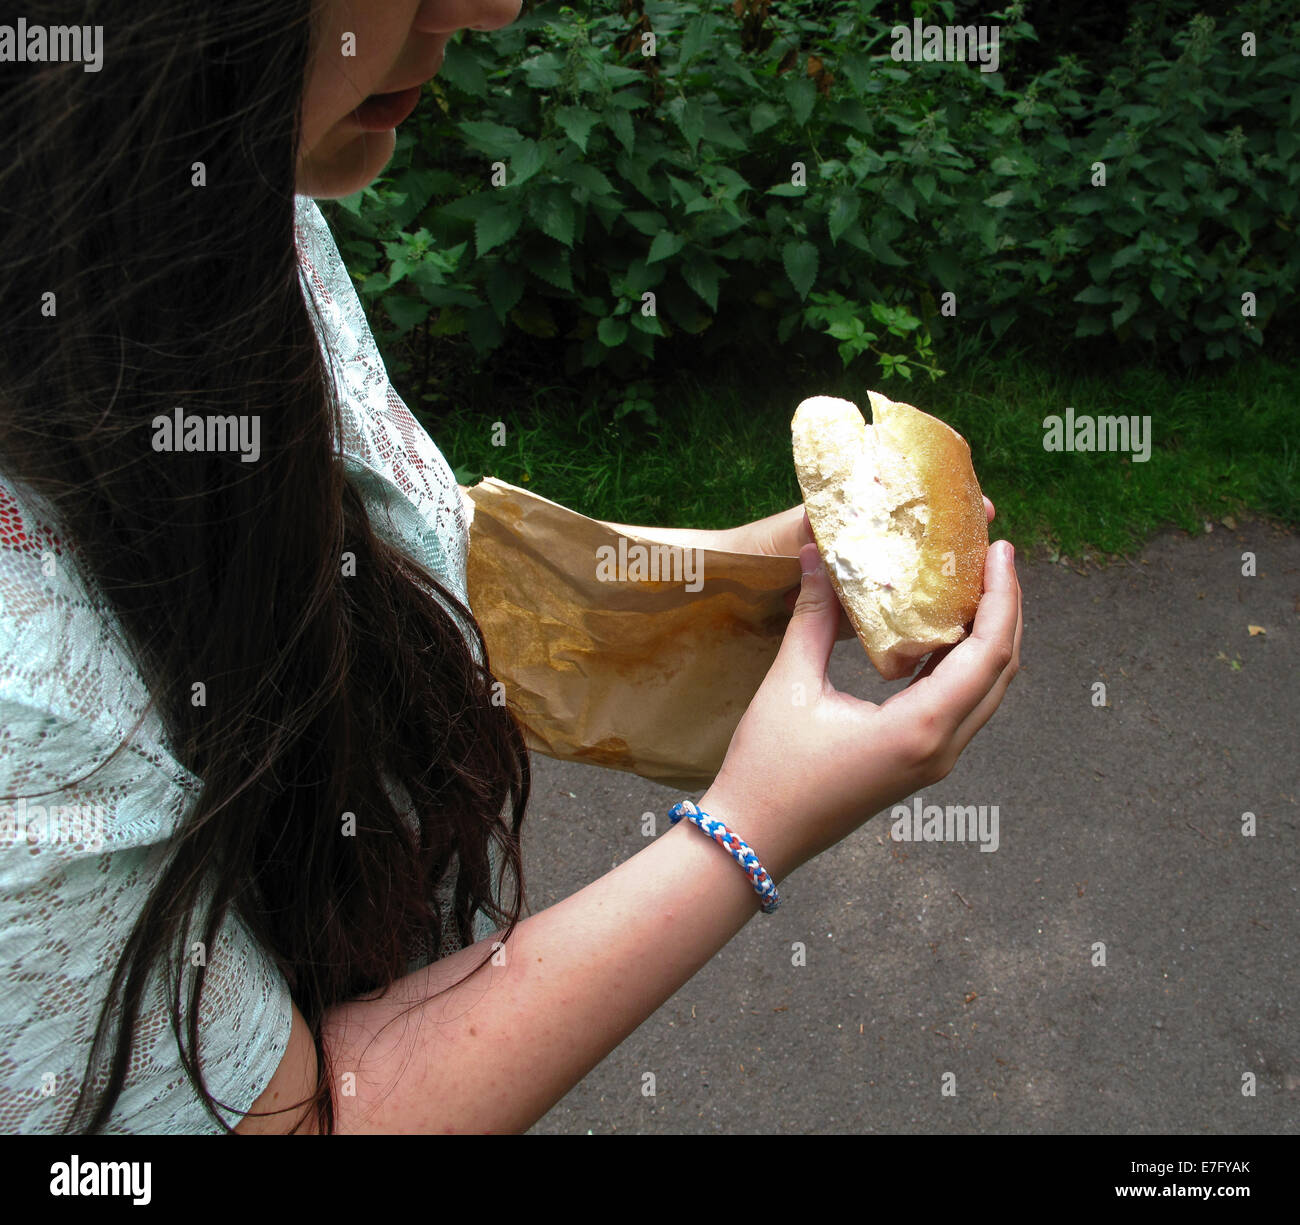 Junges Mädchen essen gefüllte Rollen außerhalb Stockfoto